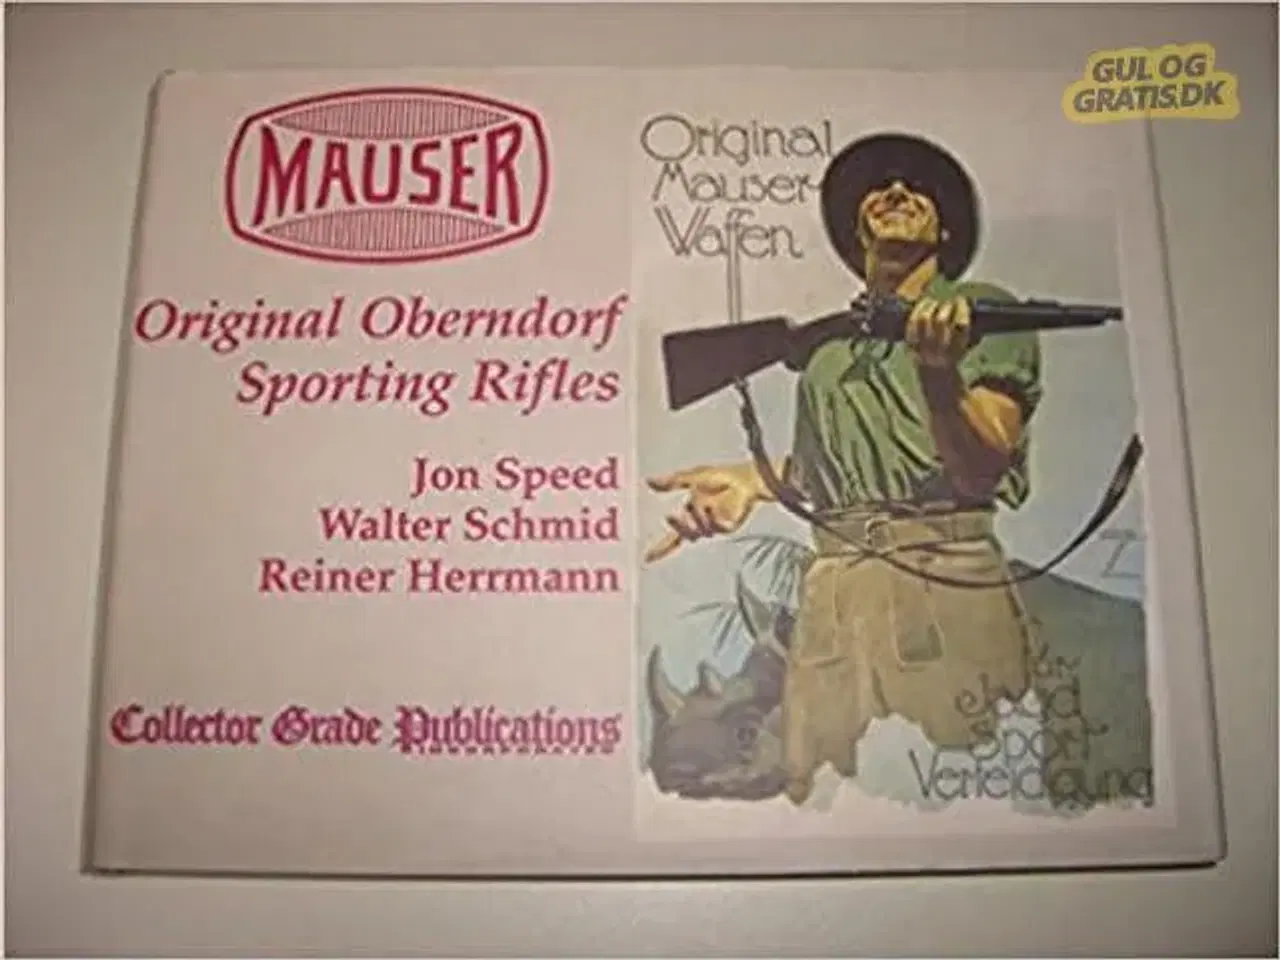 Billede 1 - Bog om Mauser geværer